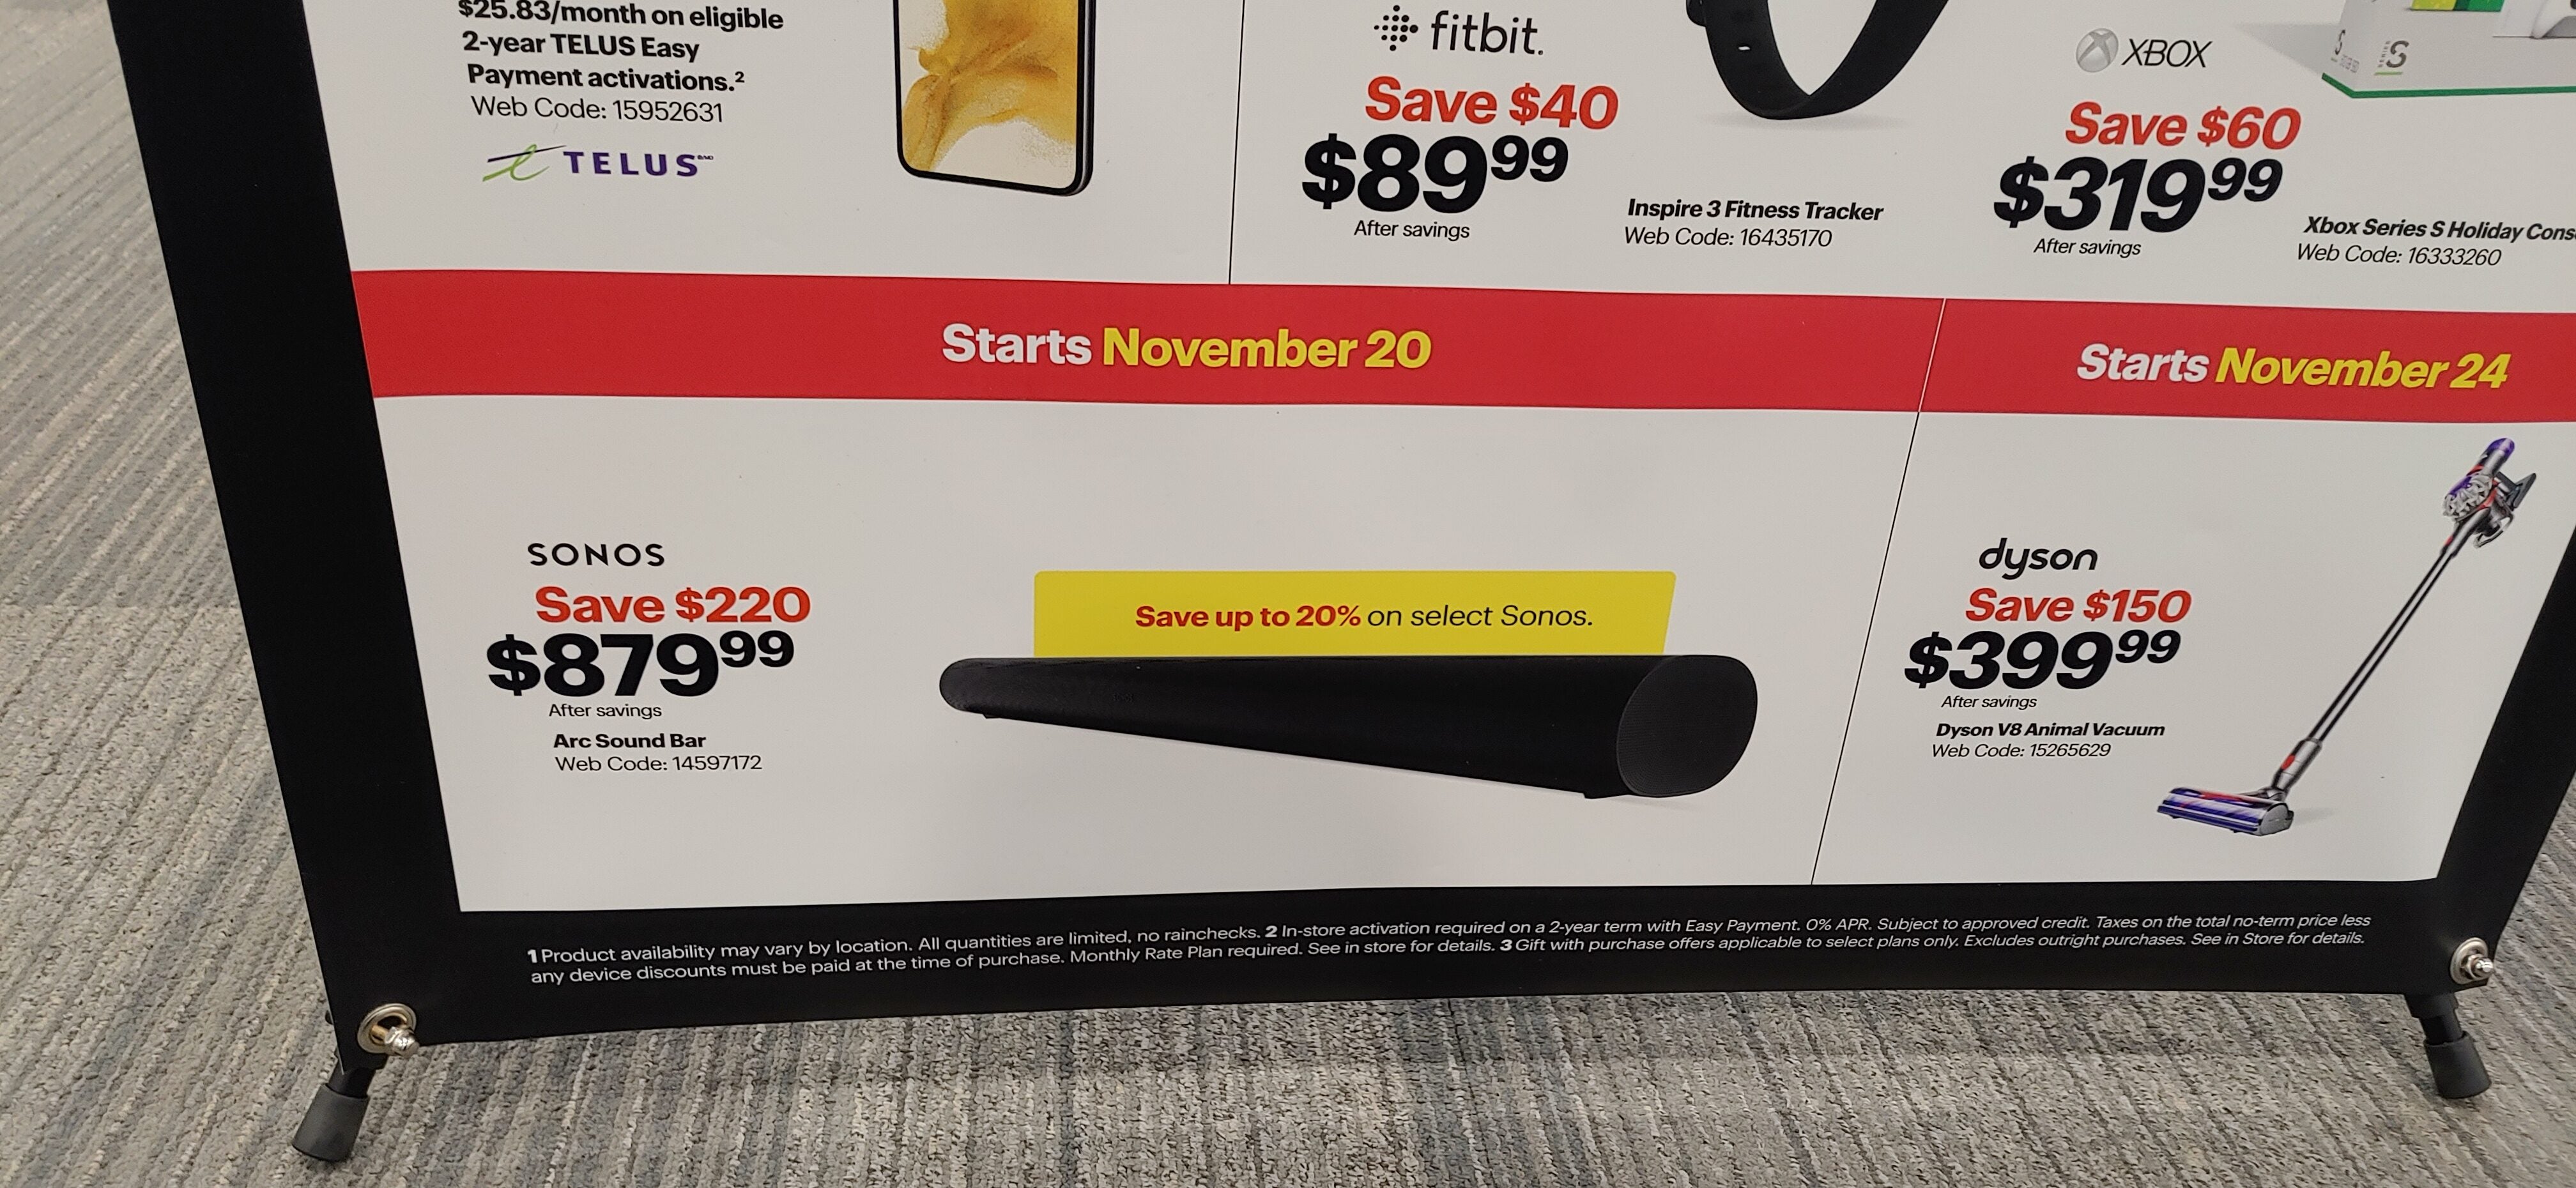 rester Vedholdende Lave Best Buy] [Black Friday] Sonos Arc - $ 879.99 and more starting Nov 20,  2022 - RedFlagDeals.com Forums